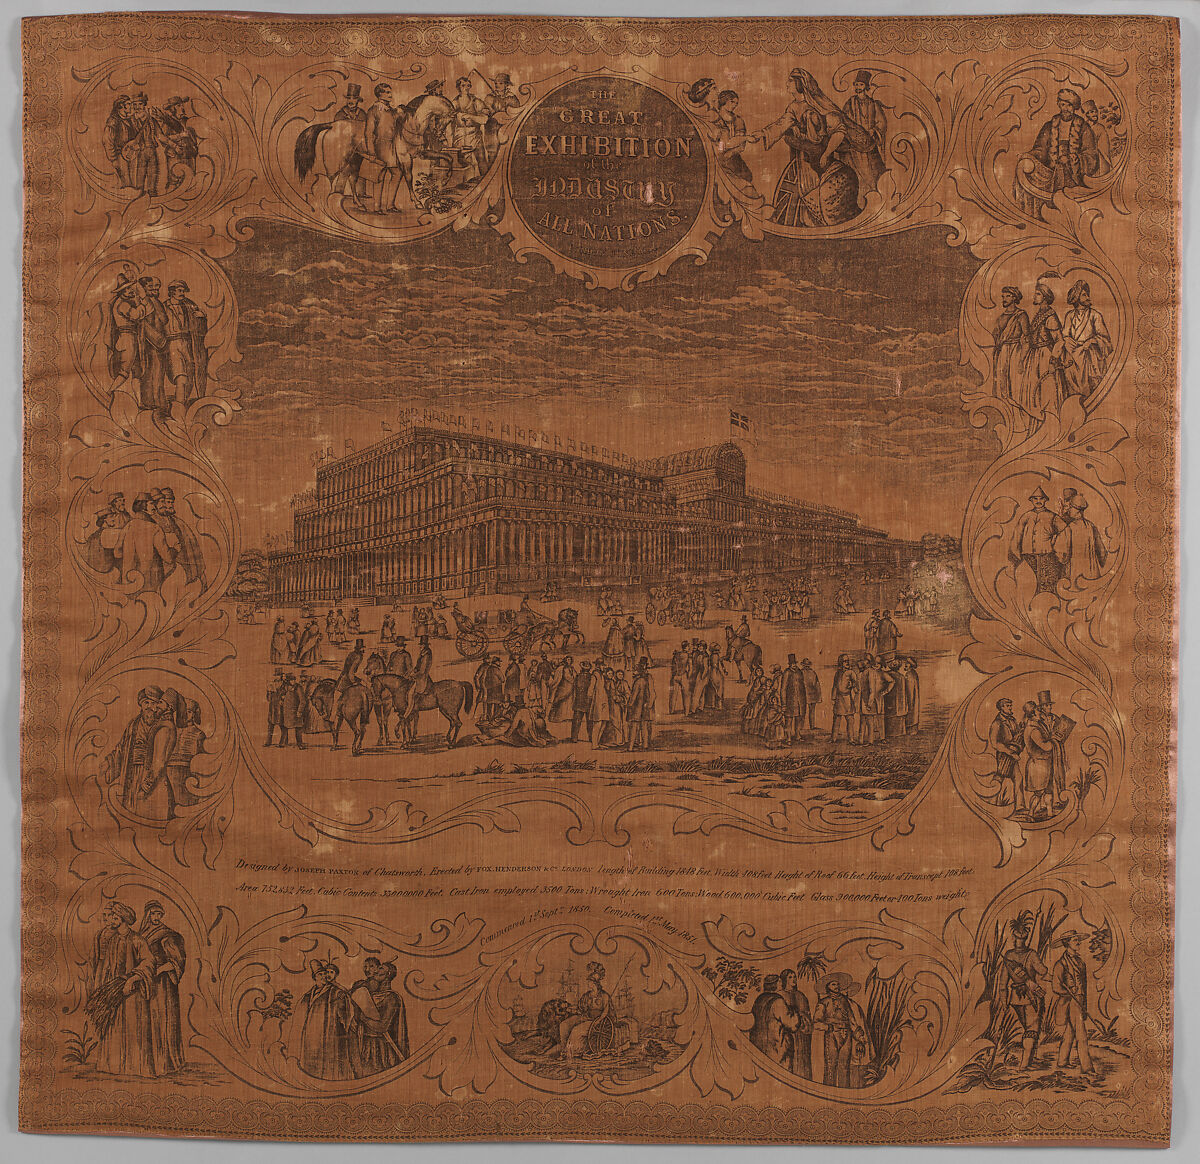 Event handkerchief, Cotton, British 